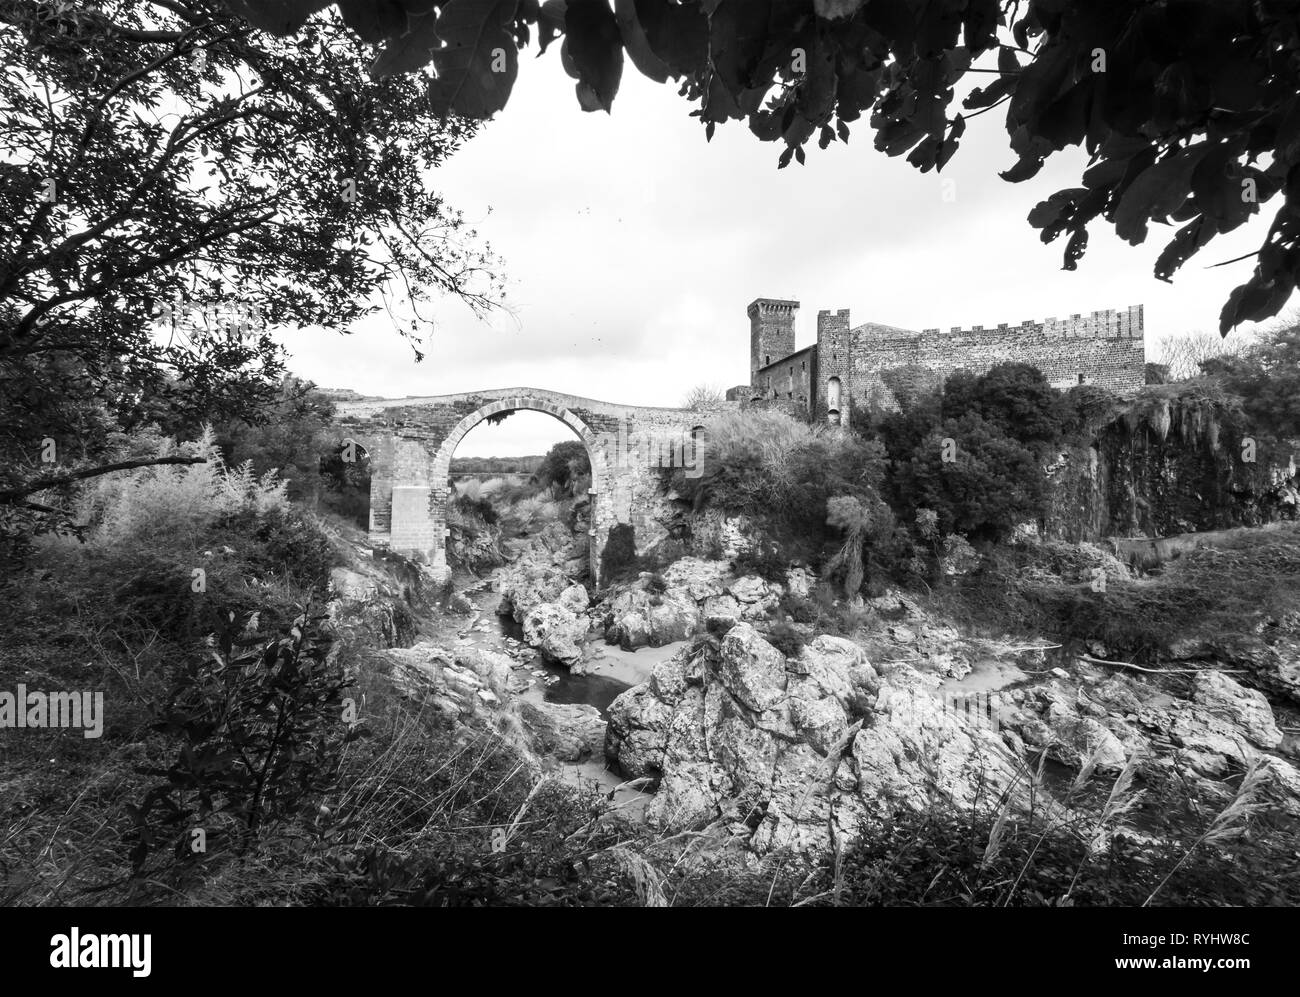 Vulci (Italie) - Le château médiéval de Vulci, musée maintenant, avec pont du diable. Vulci est une ville en ruines étrusques région du Latium, sur la rivière Fiora Banque D'Images